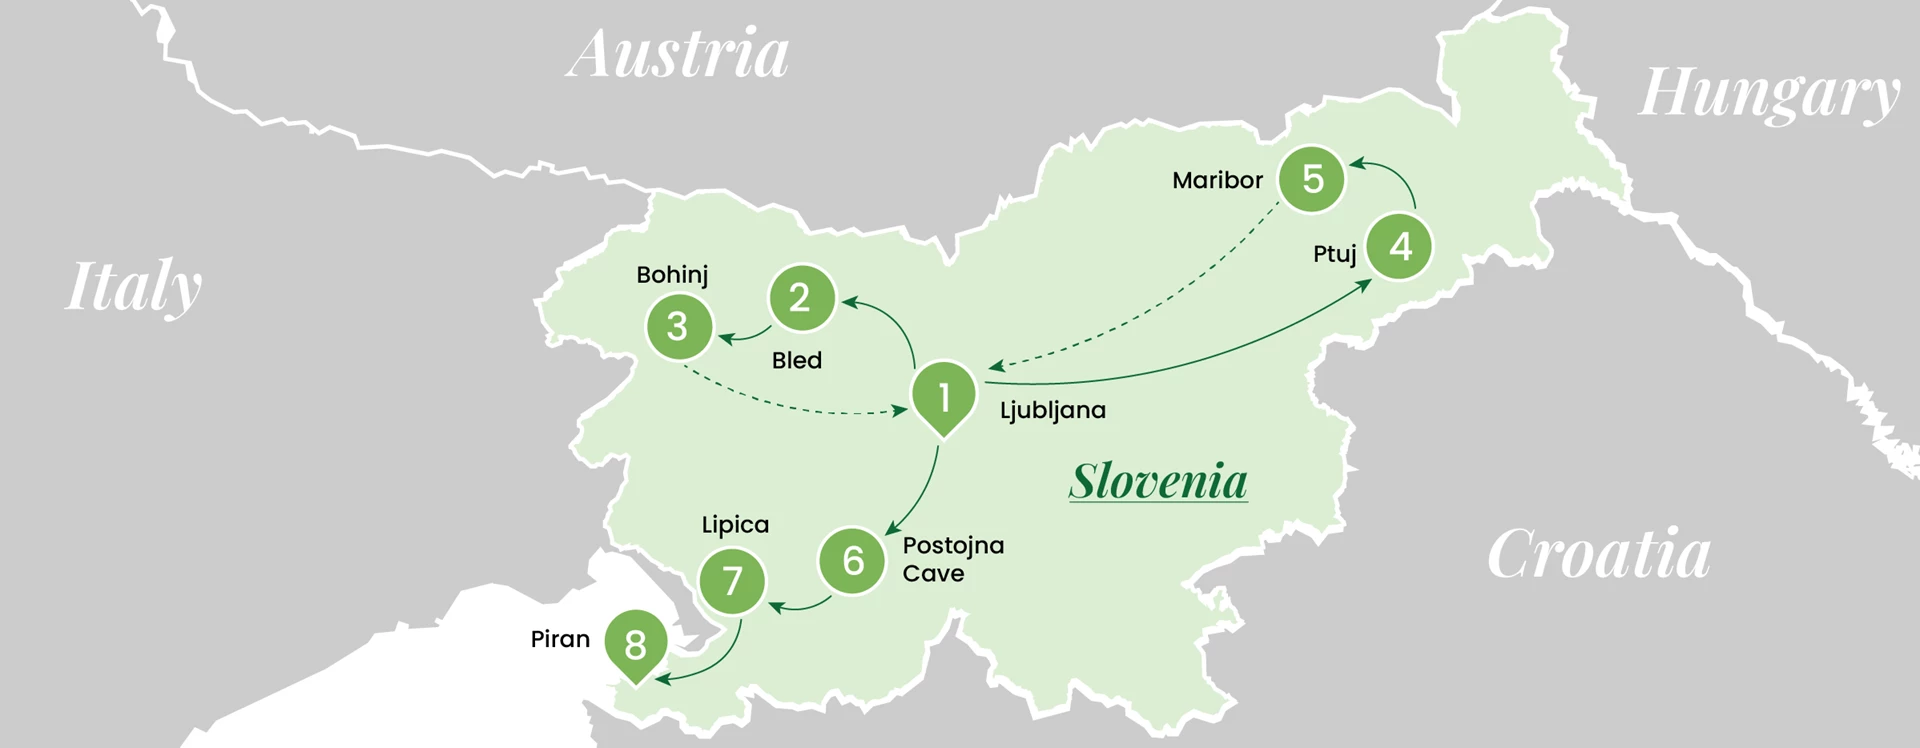 Slovenian Serenity - Itinerary Map